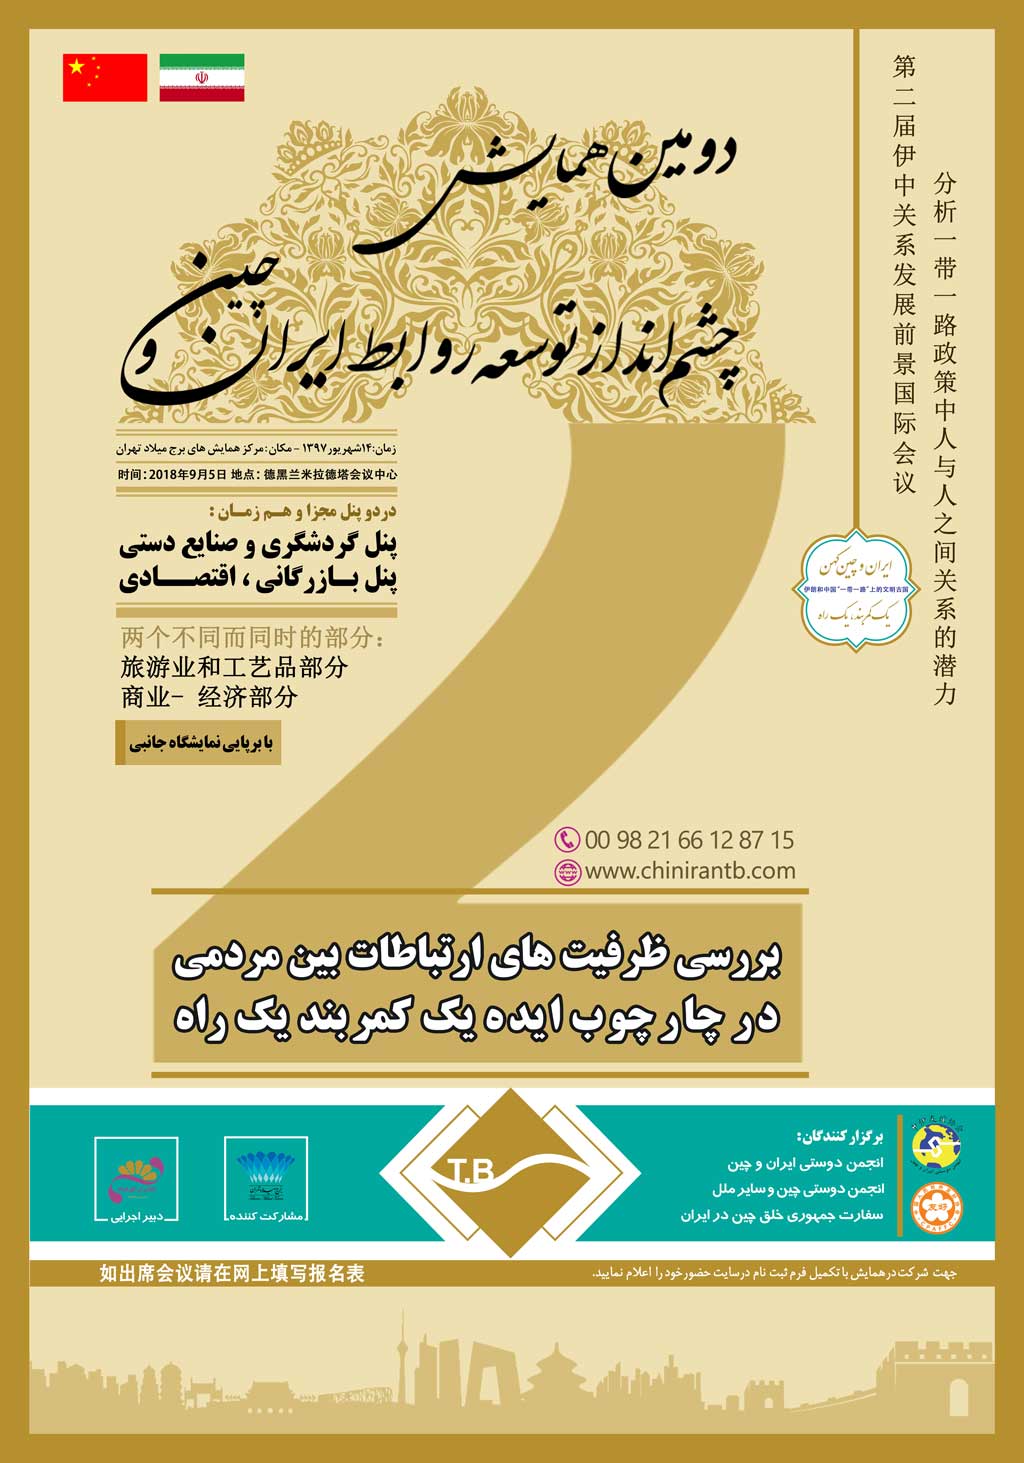 پوستر دومین همایش چشم انداز توسعه روابط ایران و چین بررسی ظرفیت های ارتباطات بین مردمی در چارچوب ایده یک کمربند  یک راه